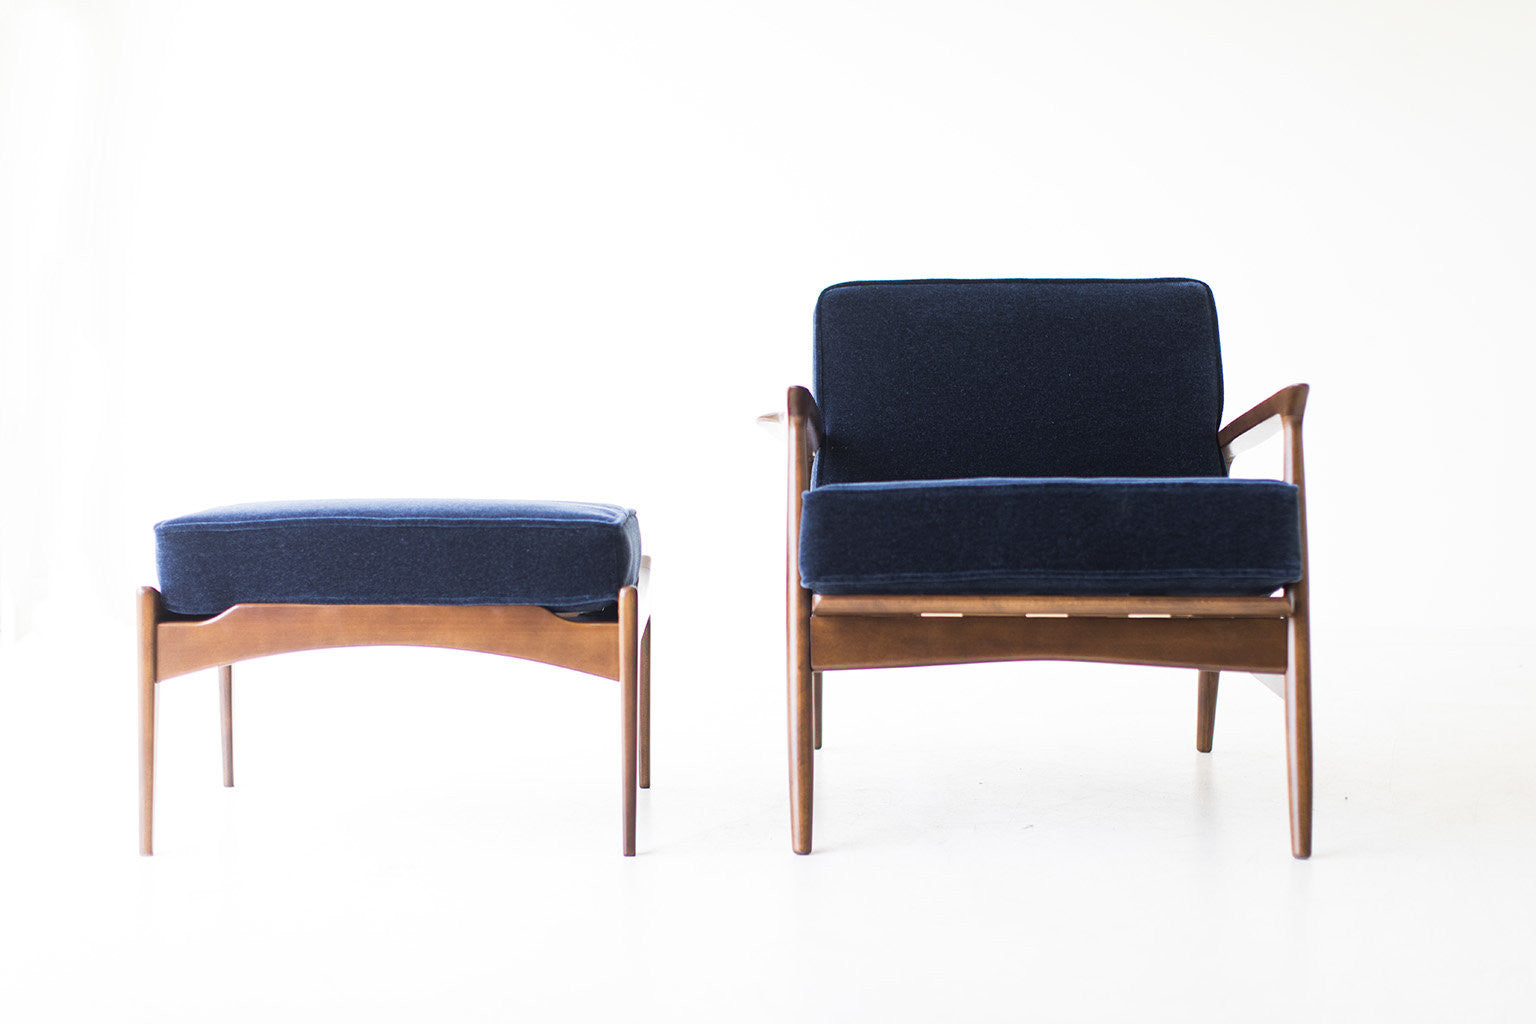 Ib Kofod Larsen Lounge Chair and Ottoman for Selig - 07111701